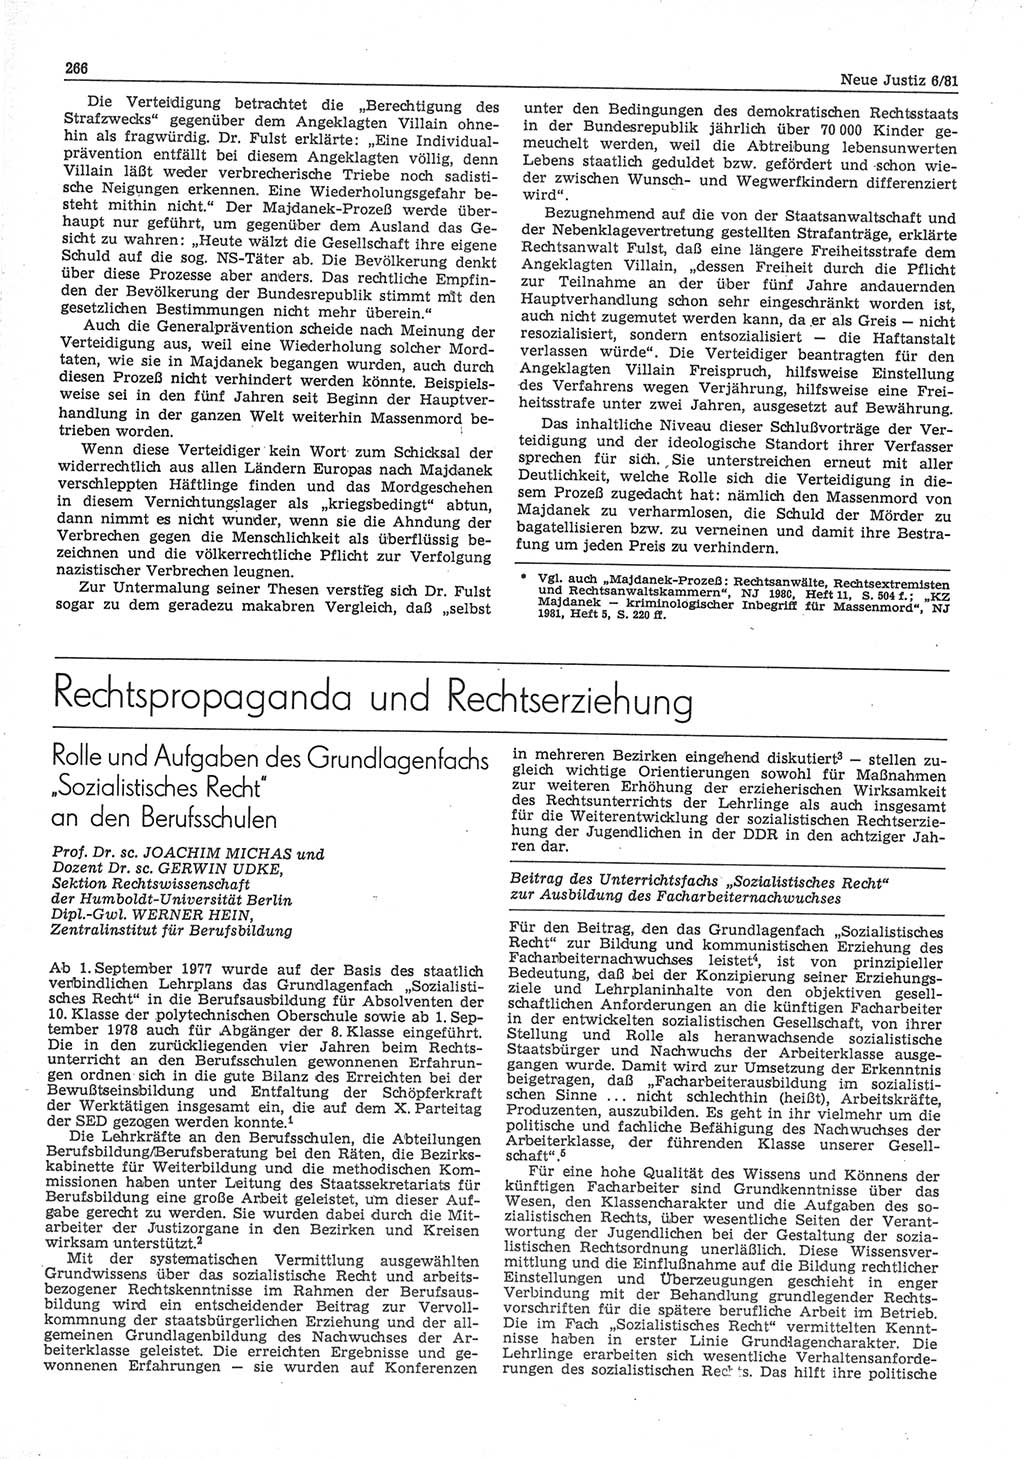 Neue Justiz (NJ), Zeitschrift für sozialistisches Recht und Gesetzlichkeit [Deutsche Demokratische Republik (DDR)], 35. Jahrgang 1981, Seite 266 (NJ DDR 1981, S. 266)